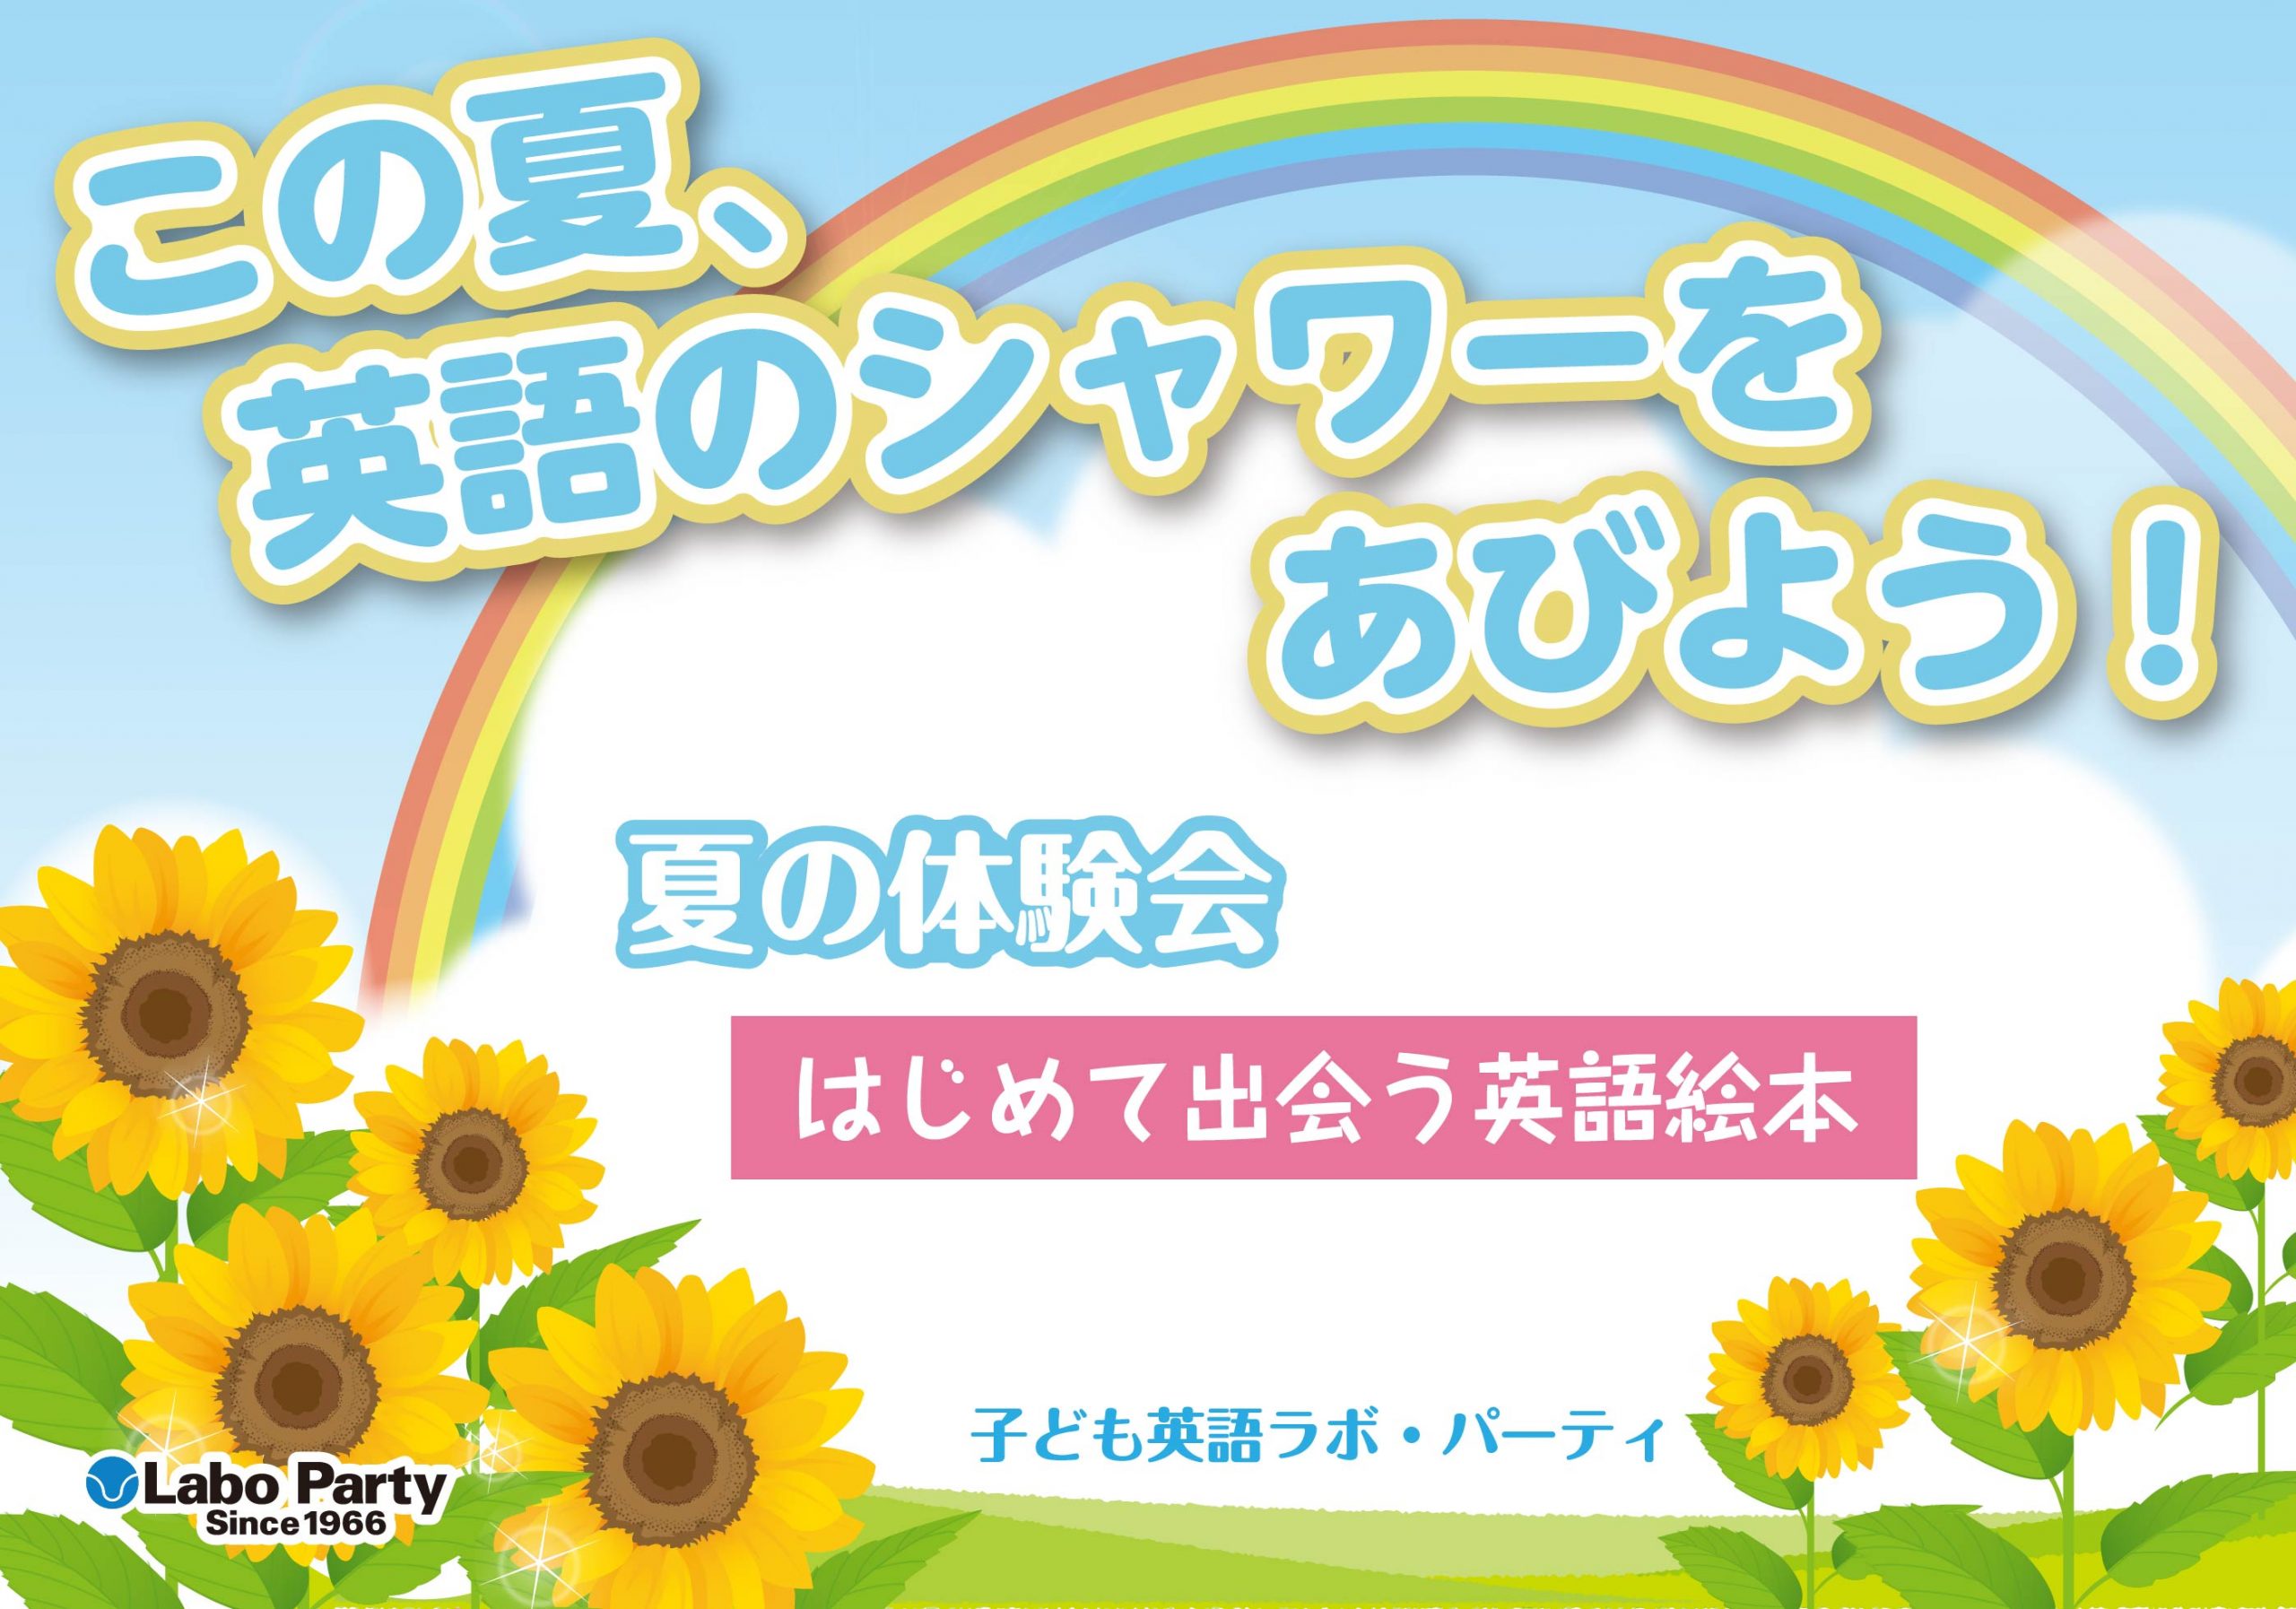 ラボ・パーティ 三郷市幸房教室(茂木パーティ)のこの夏、英語のシャワーをあびよう！